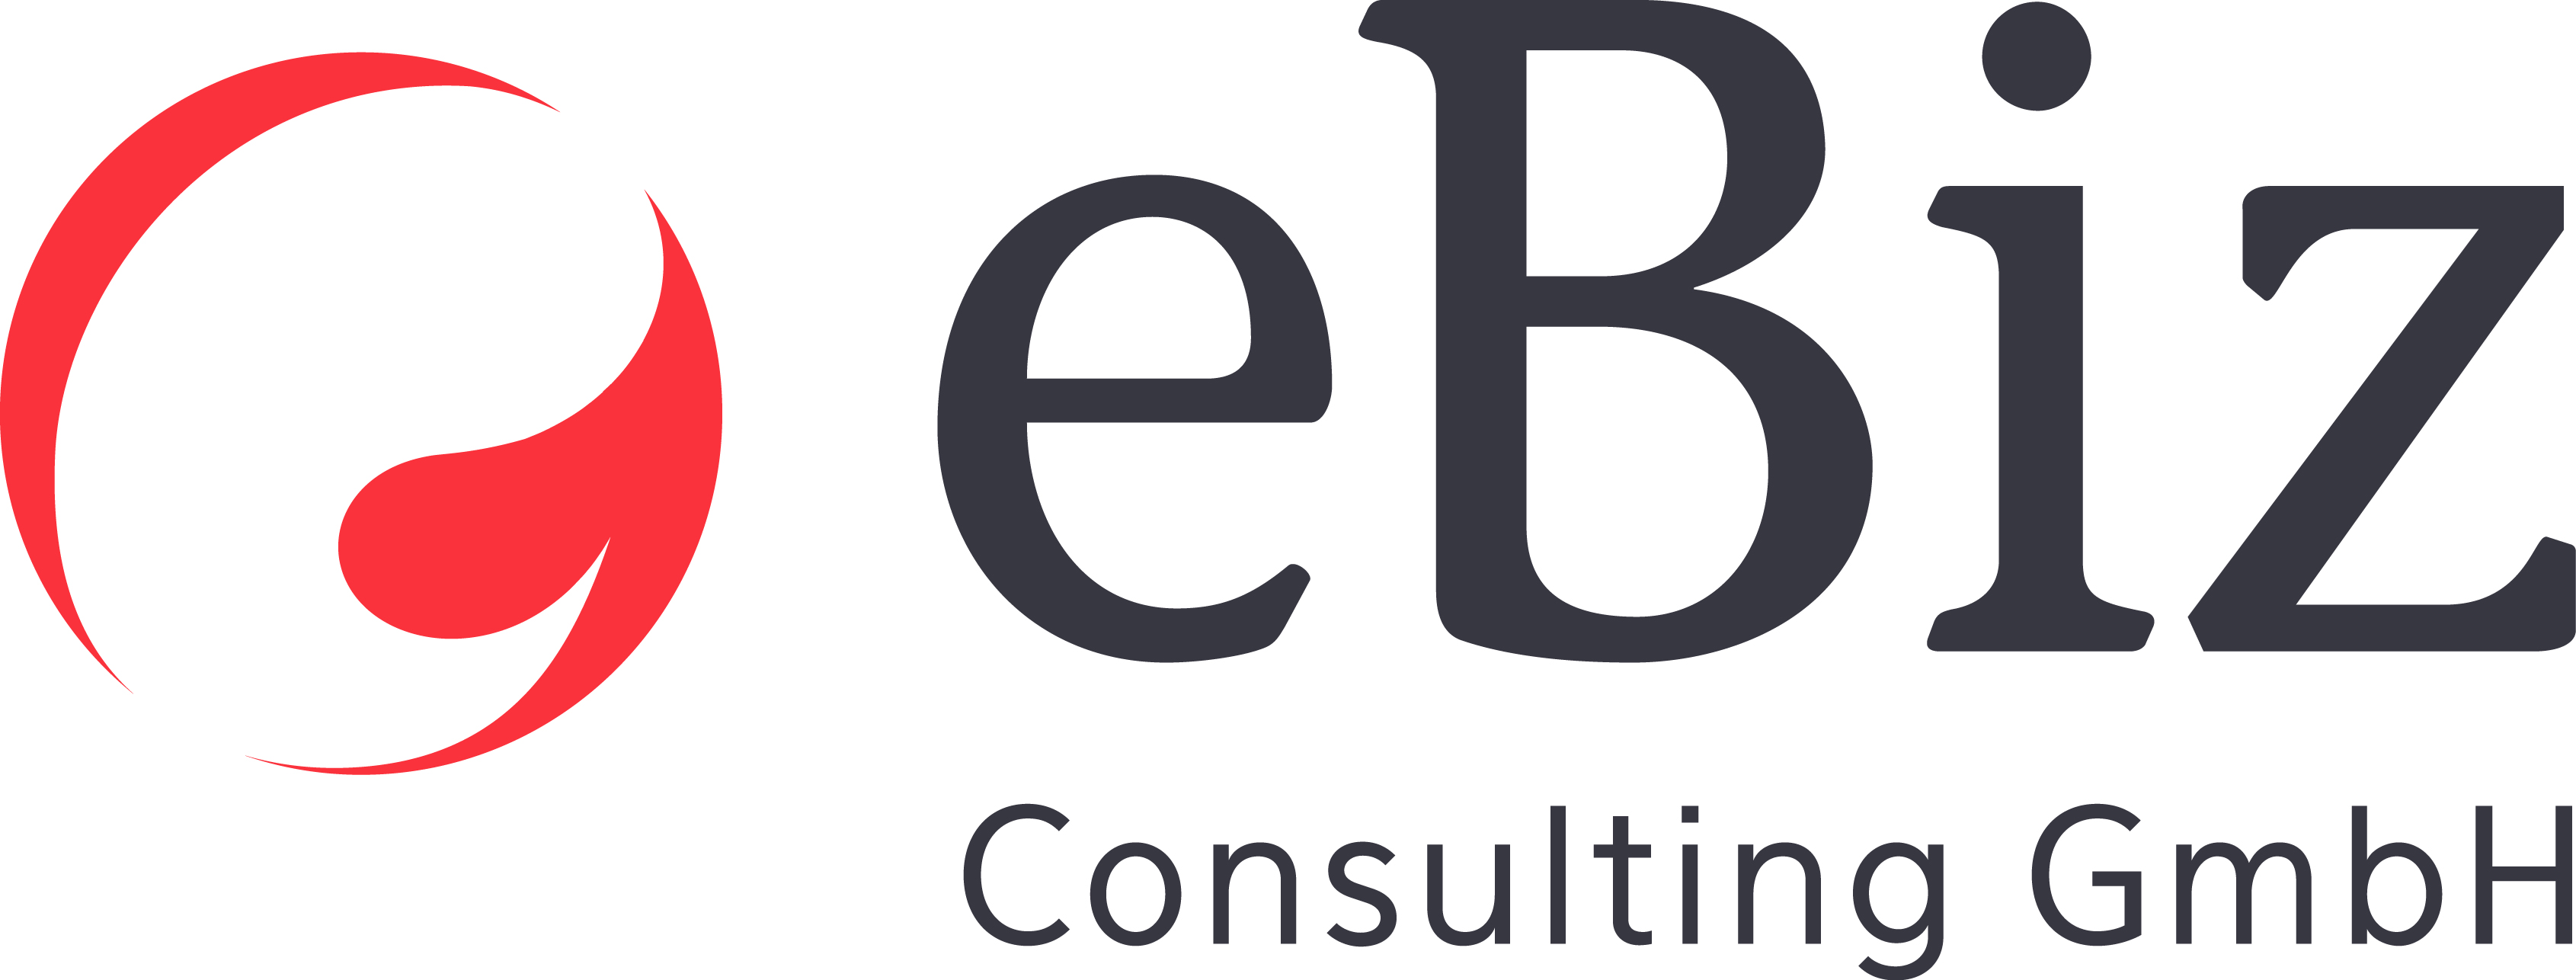 eBiz Consulting GmbH Logo